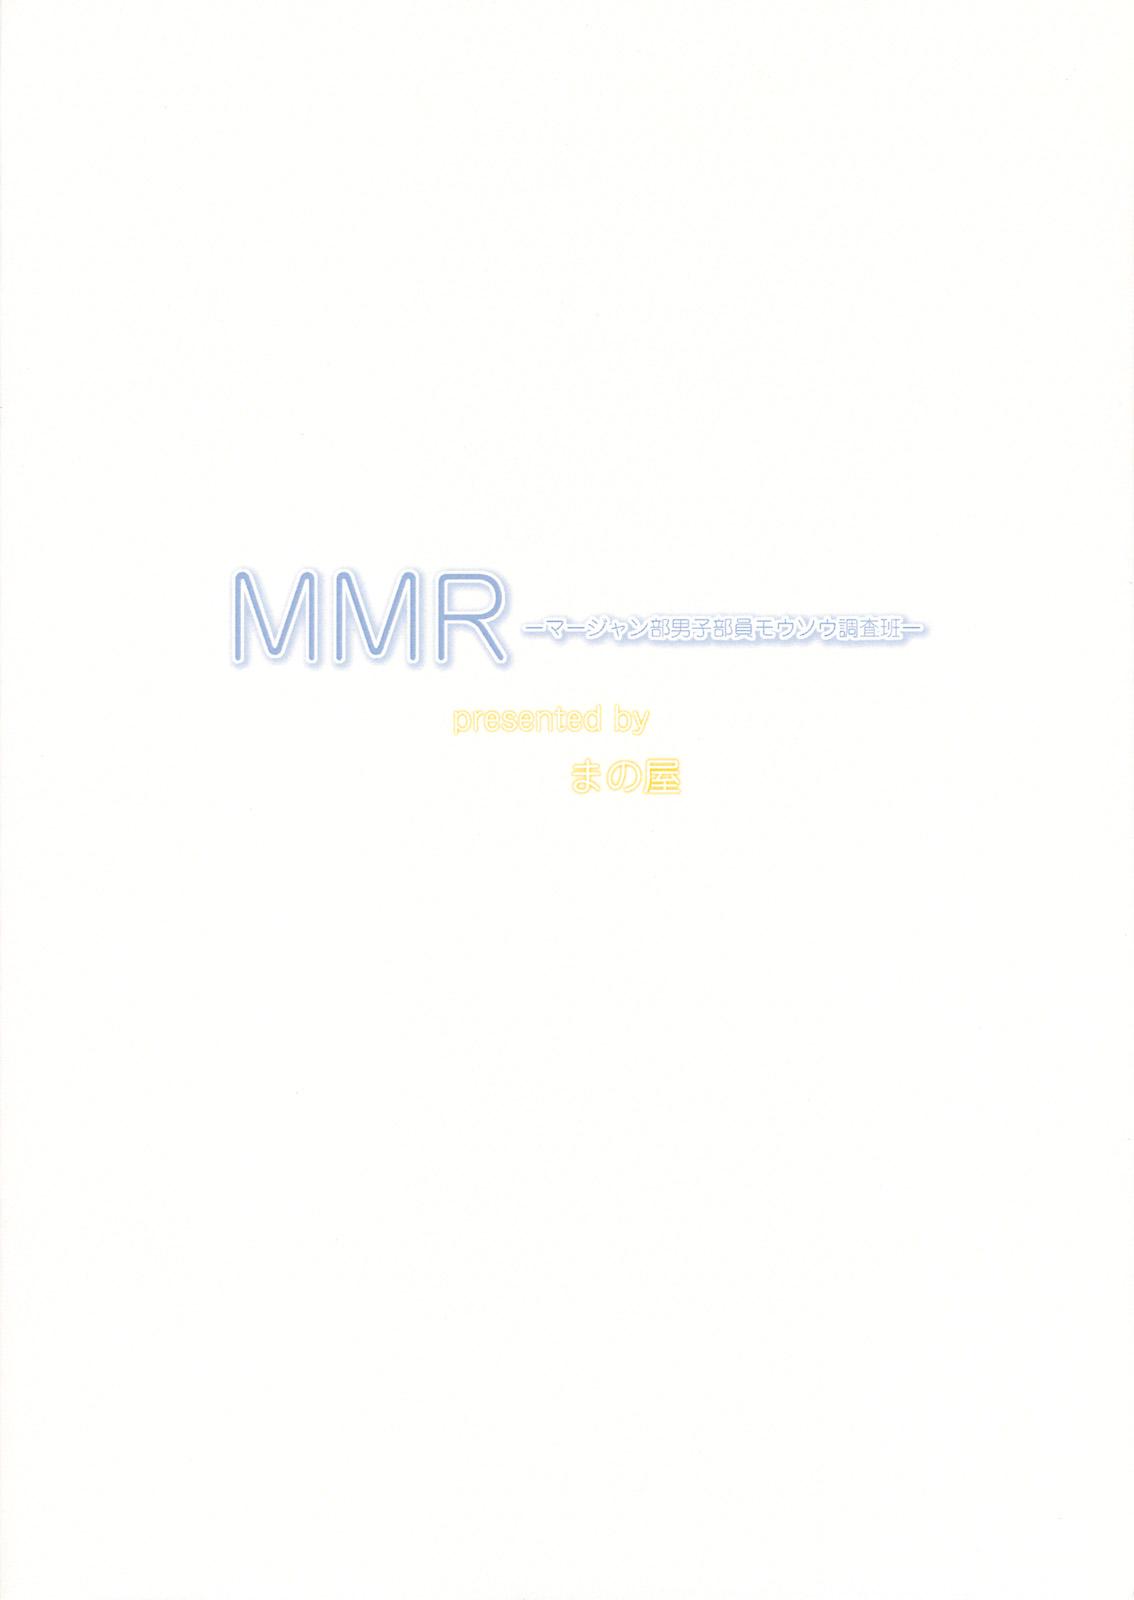 MMR 25